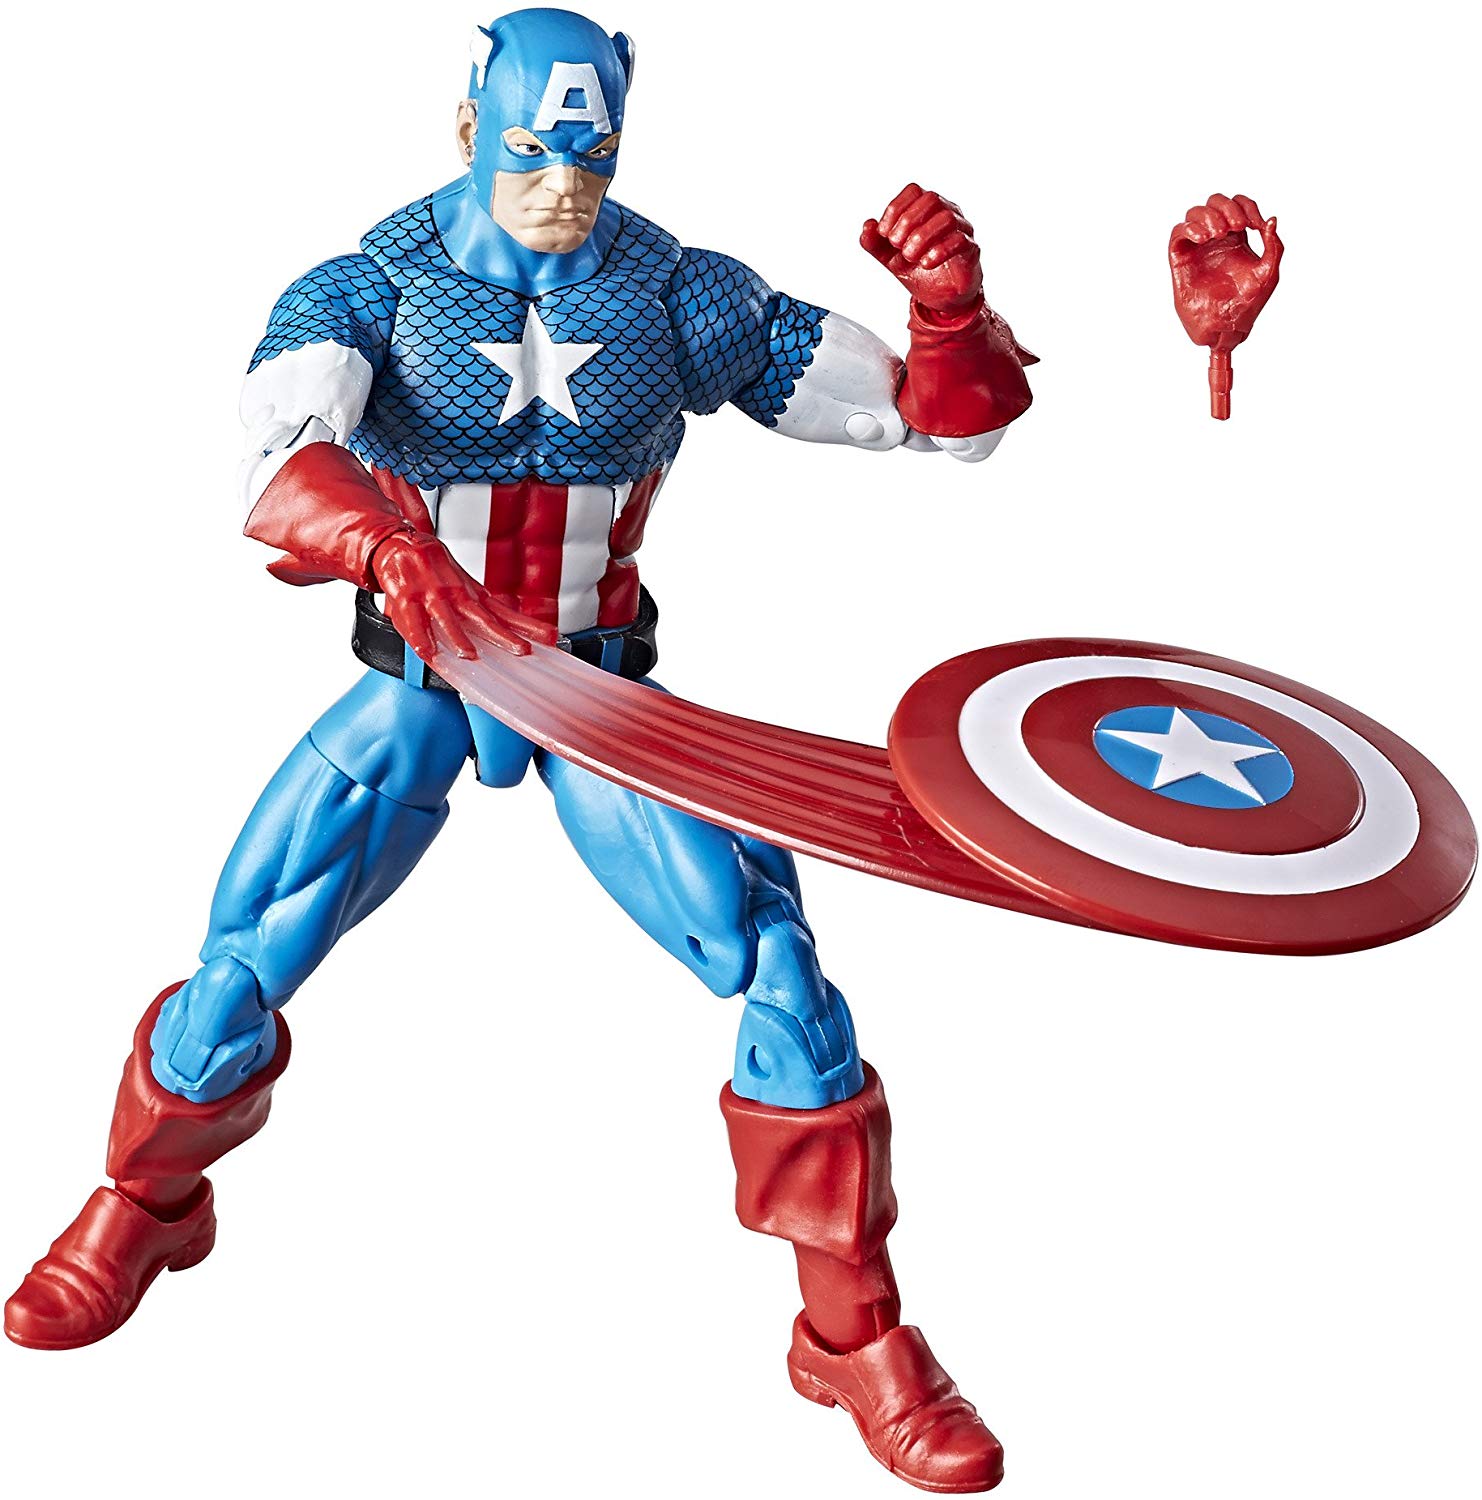 Marvel Legends Vintage Retro Series Captain America Wave 1 Action Figure 2